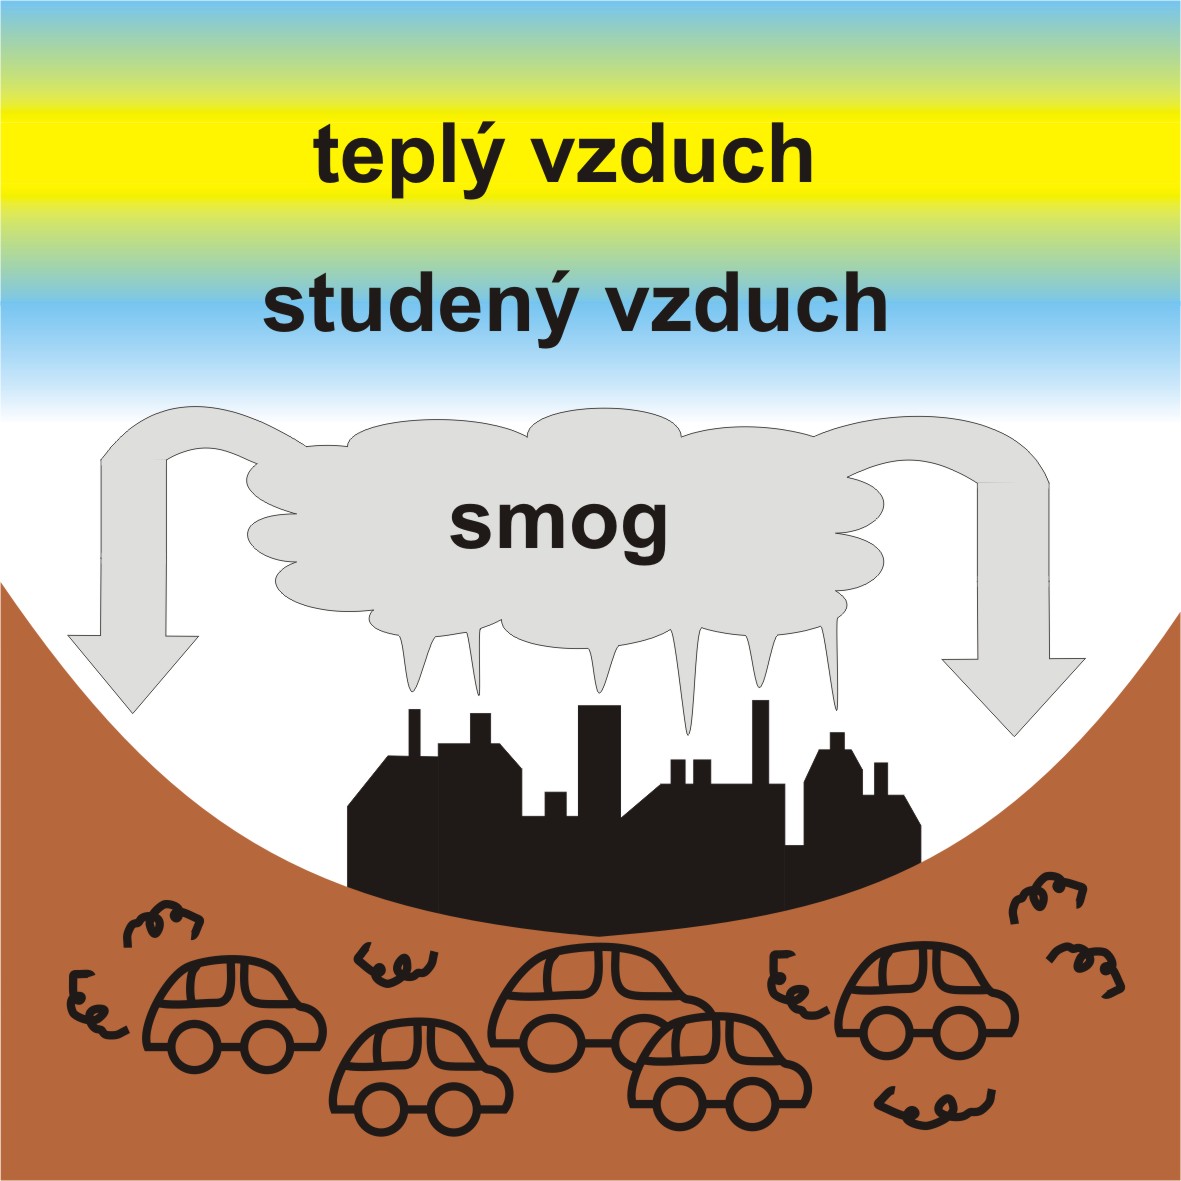 Na obrázku jsou názorně zobrazeny vrstvy teplého a studeného vzduchu, které mají za následek vznik smogové situace.